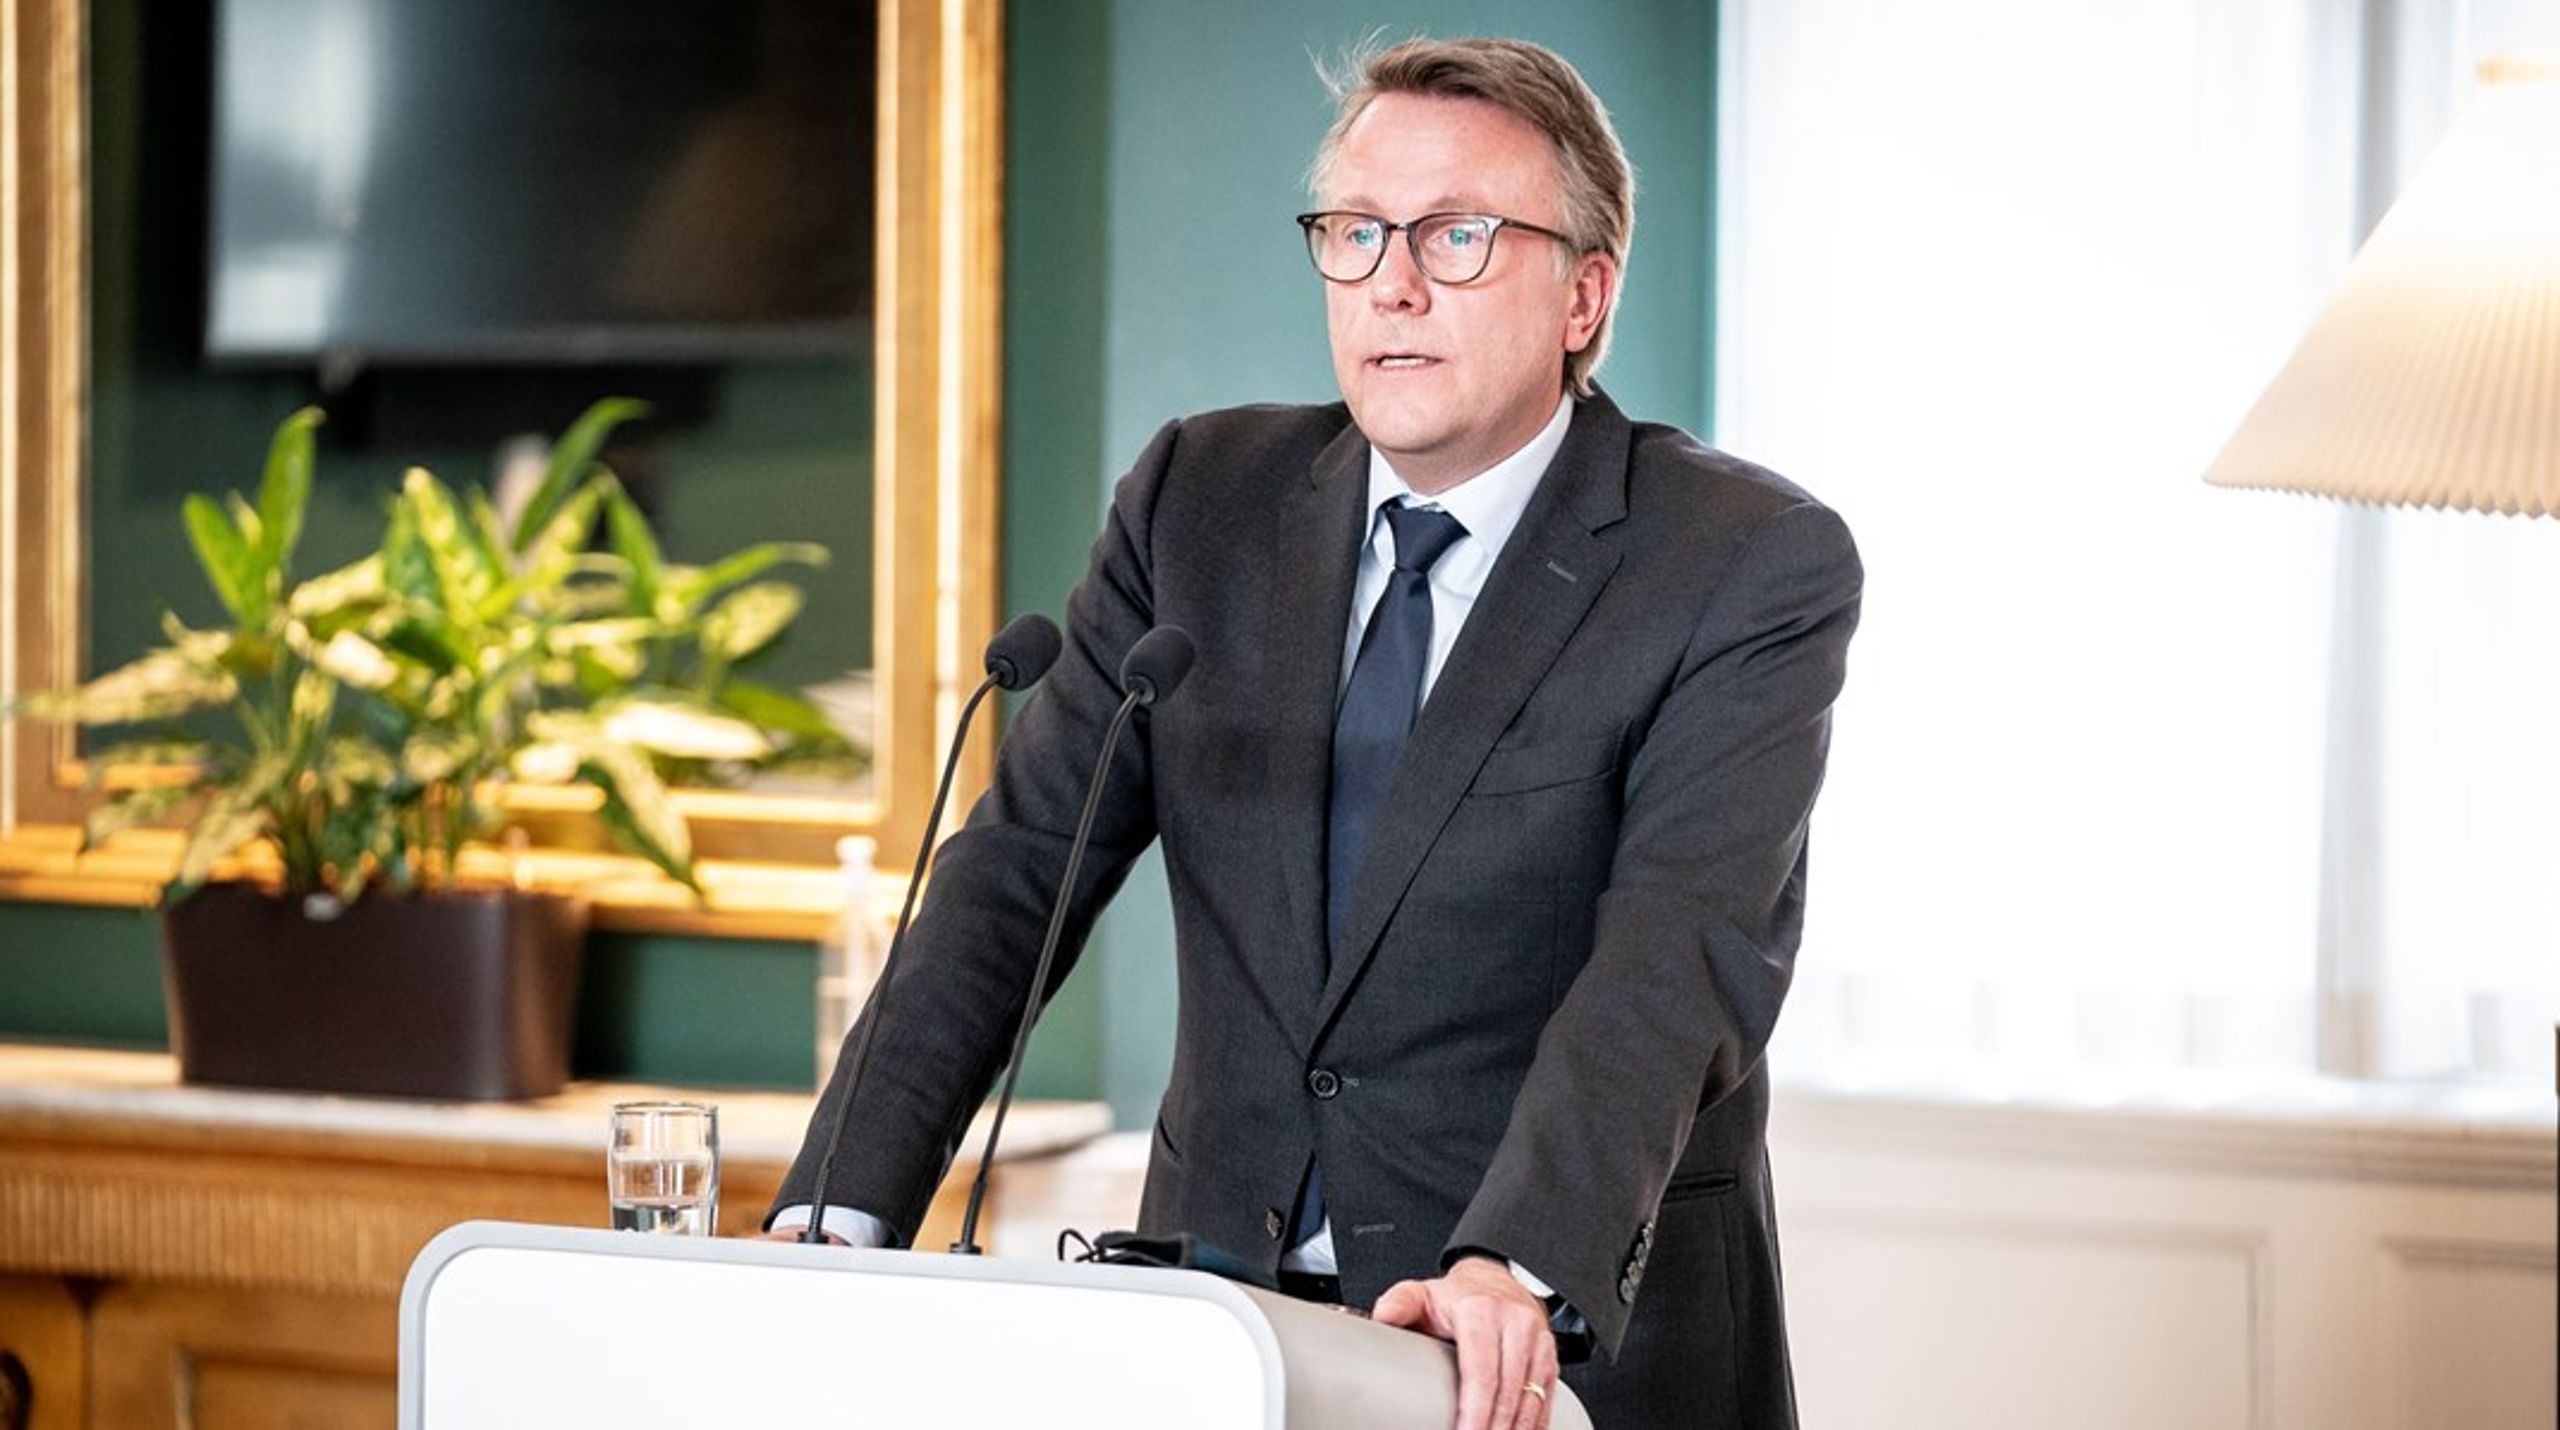 Skatteminister Morten Bødskovs fortolkning af forskning- og udviklingsfradraget vækker kritik fra skatteekspert.